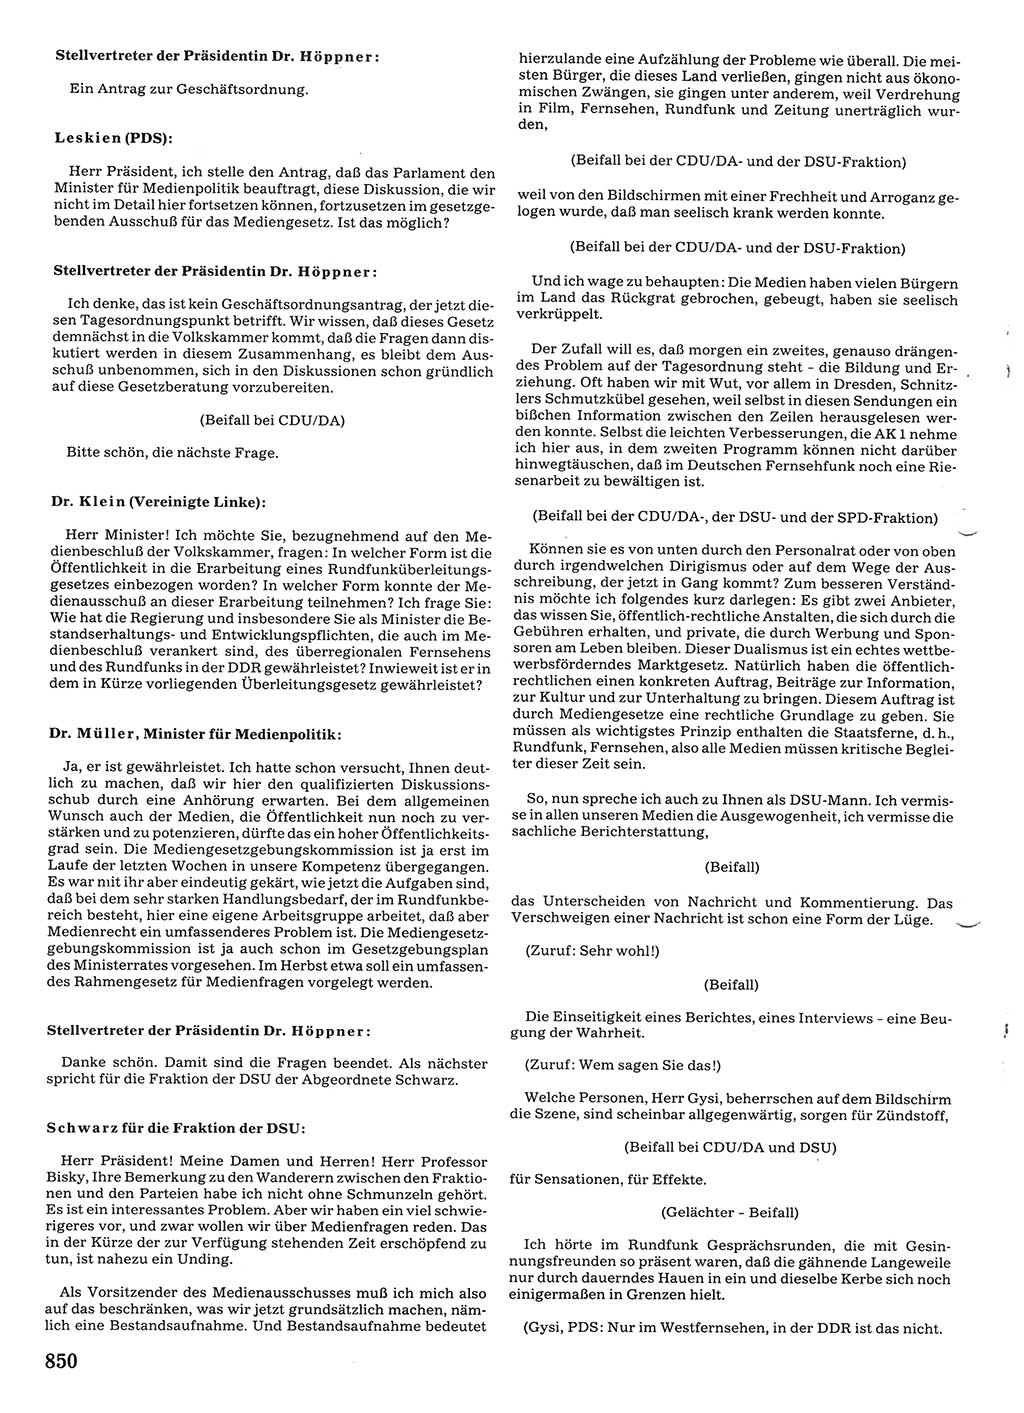 Tagungen der Volkskammer (VK) der Deutschen Demokratischen Republik (DDR), 10. Wahlperiode 1990, Seite 850 (VK. DDR 10. WP. 1990, Prot. Tg. 1-38, 5.4.-2.10.1990, S. 850)